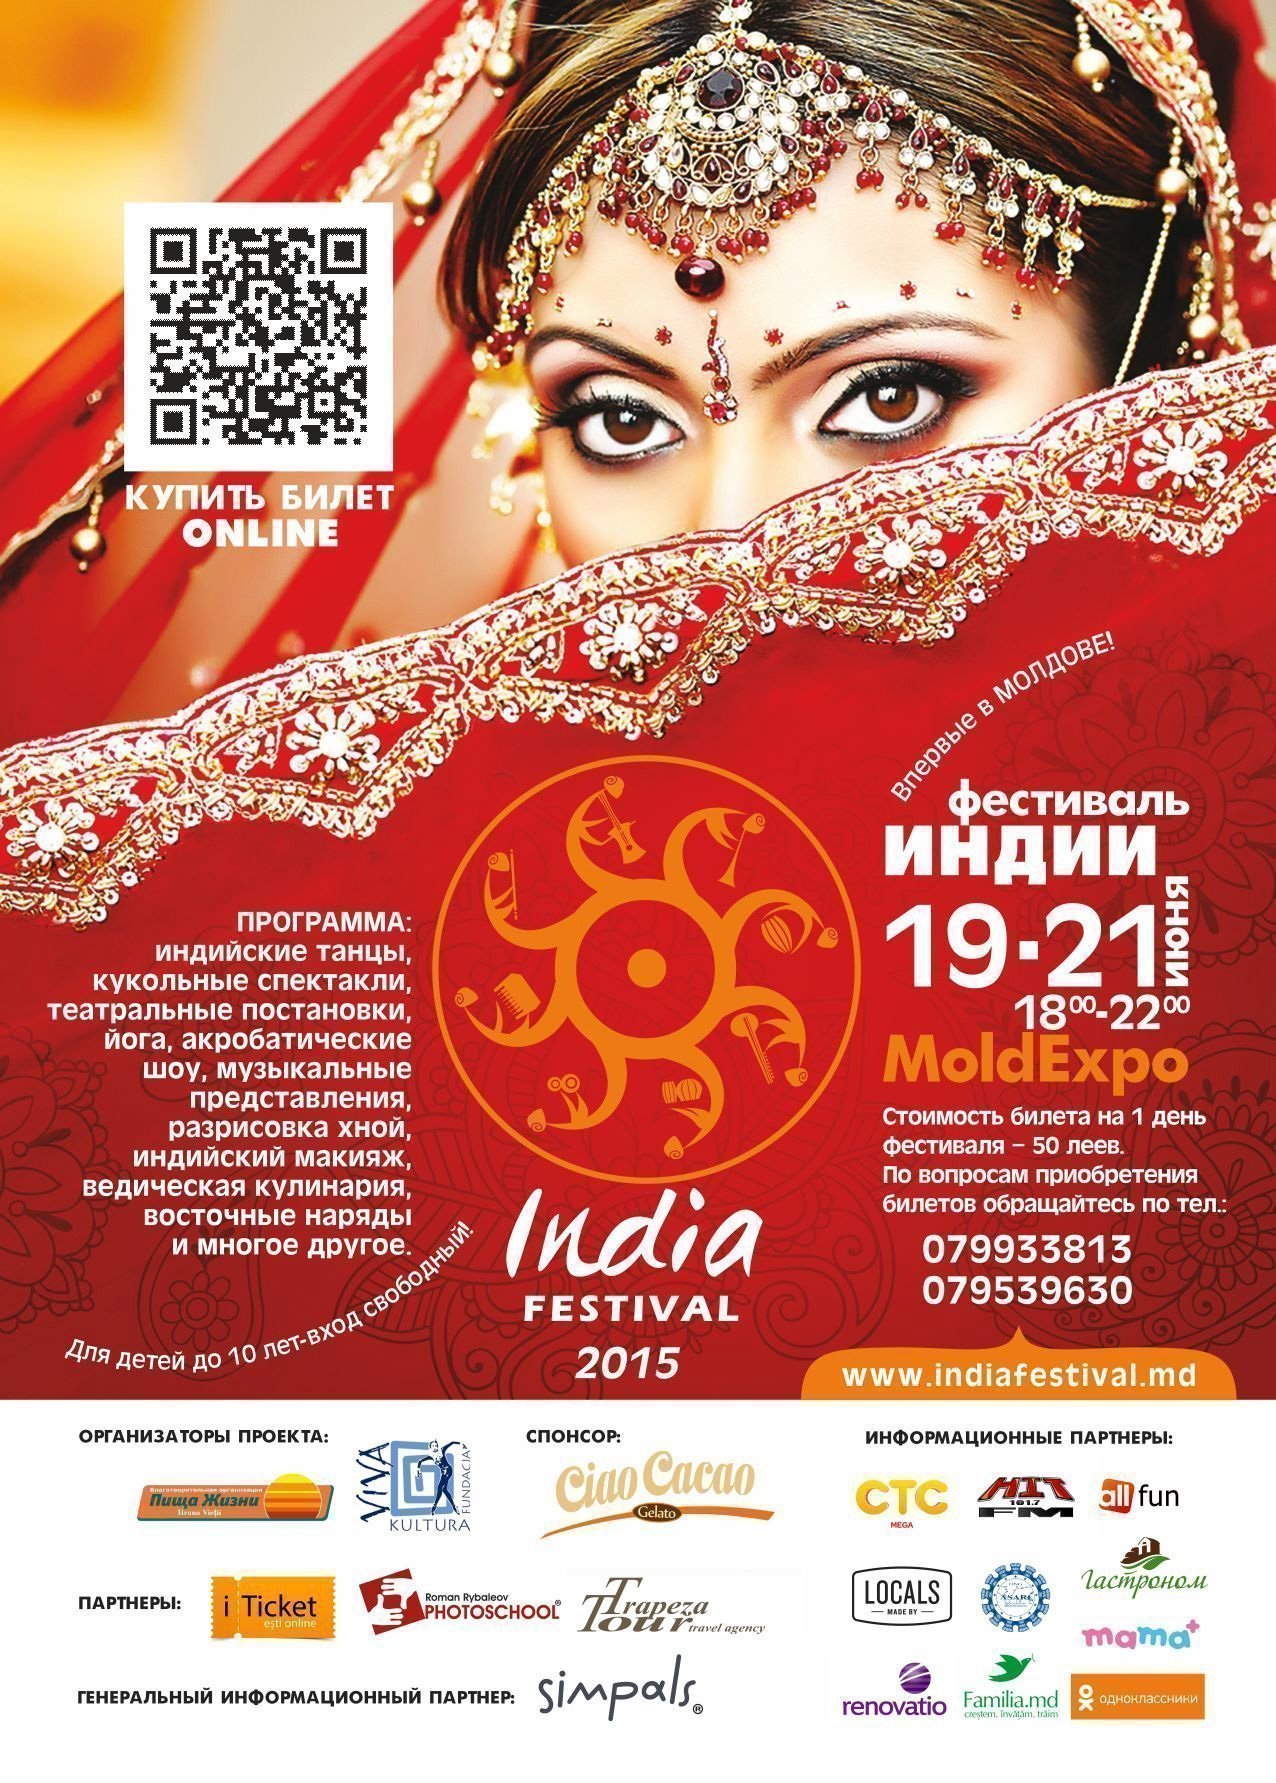 Фестиваль Индии в Кишиневе